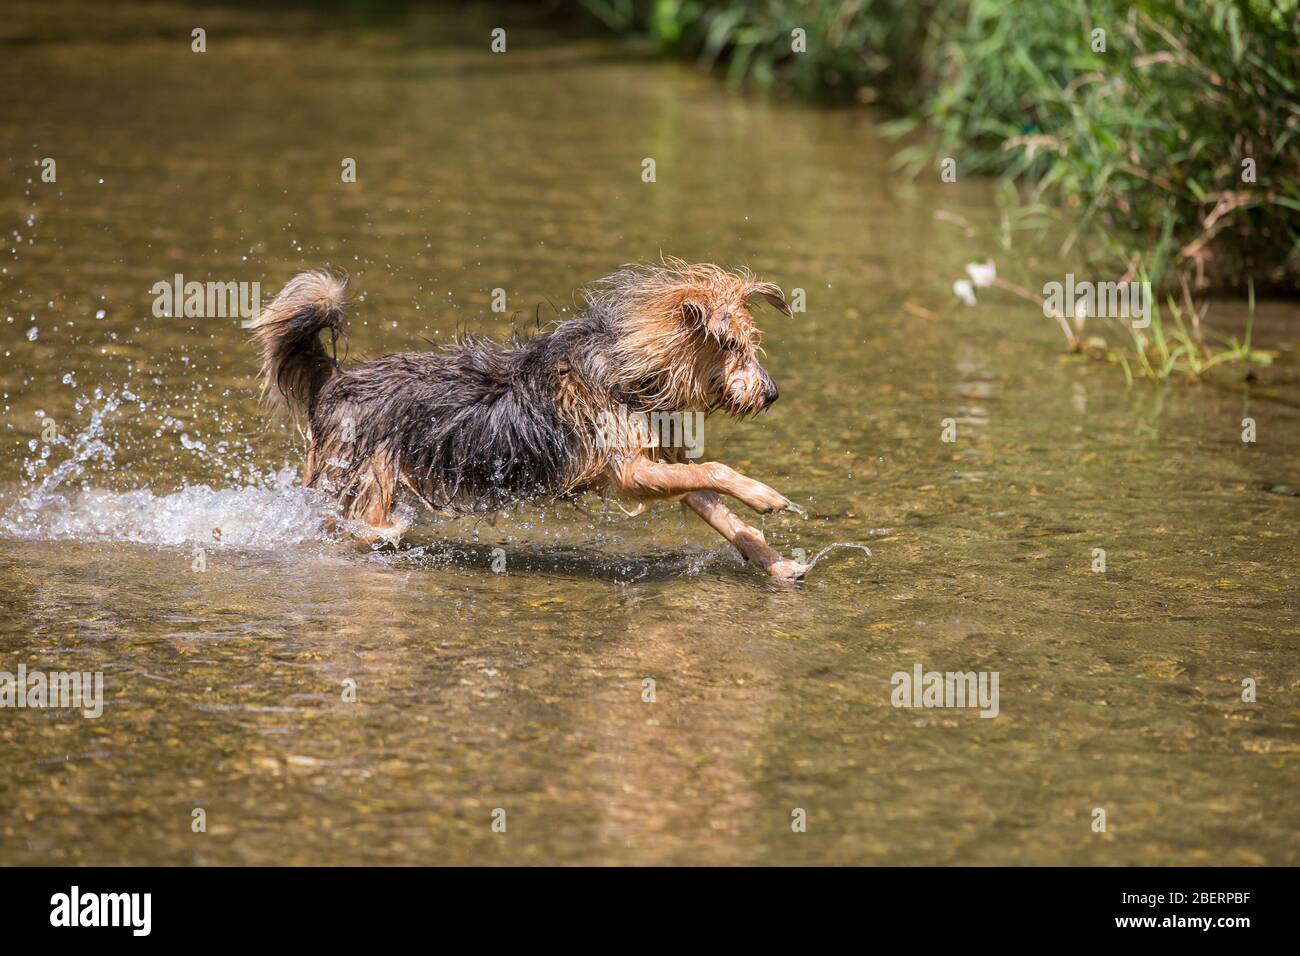 Porträt eines jungen Terrier-Hundes. Nahaufnahme eines glücklichen Hundes, der im Wasser läuft und an einem heißen Sommertag den kalten Fluss genießt, Leitha, Österreich Stockfoto